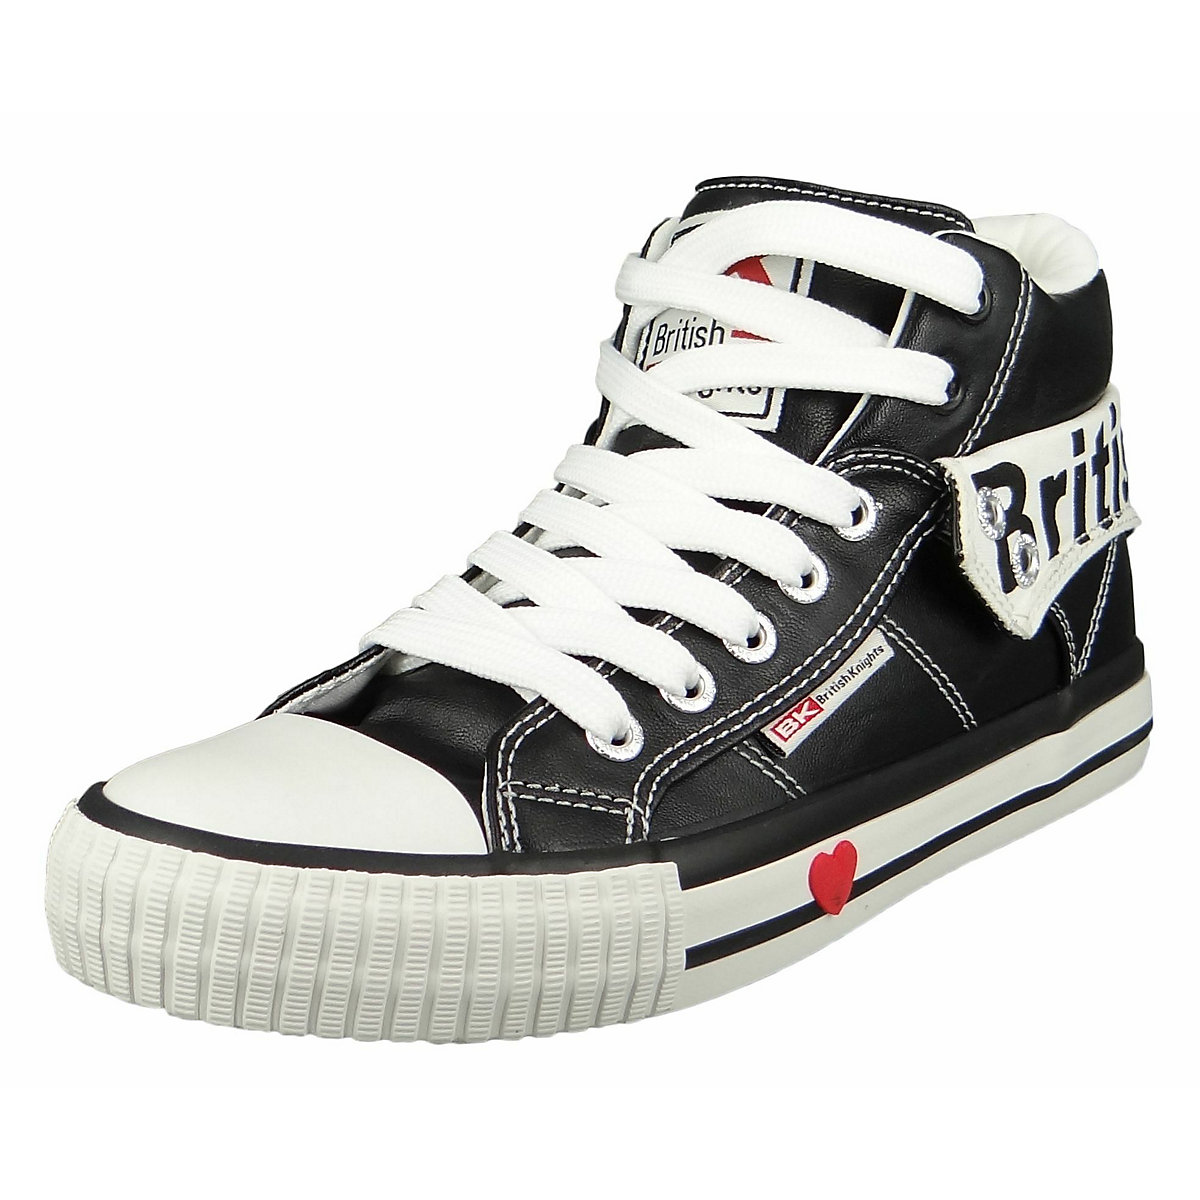 British Knights Roco B46-3706-03 Damen Sneaker High Kunstleder Schwarz Black White Sneakers Low schwarz